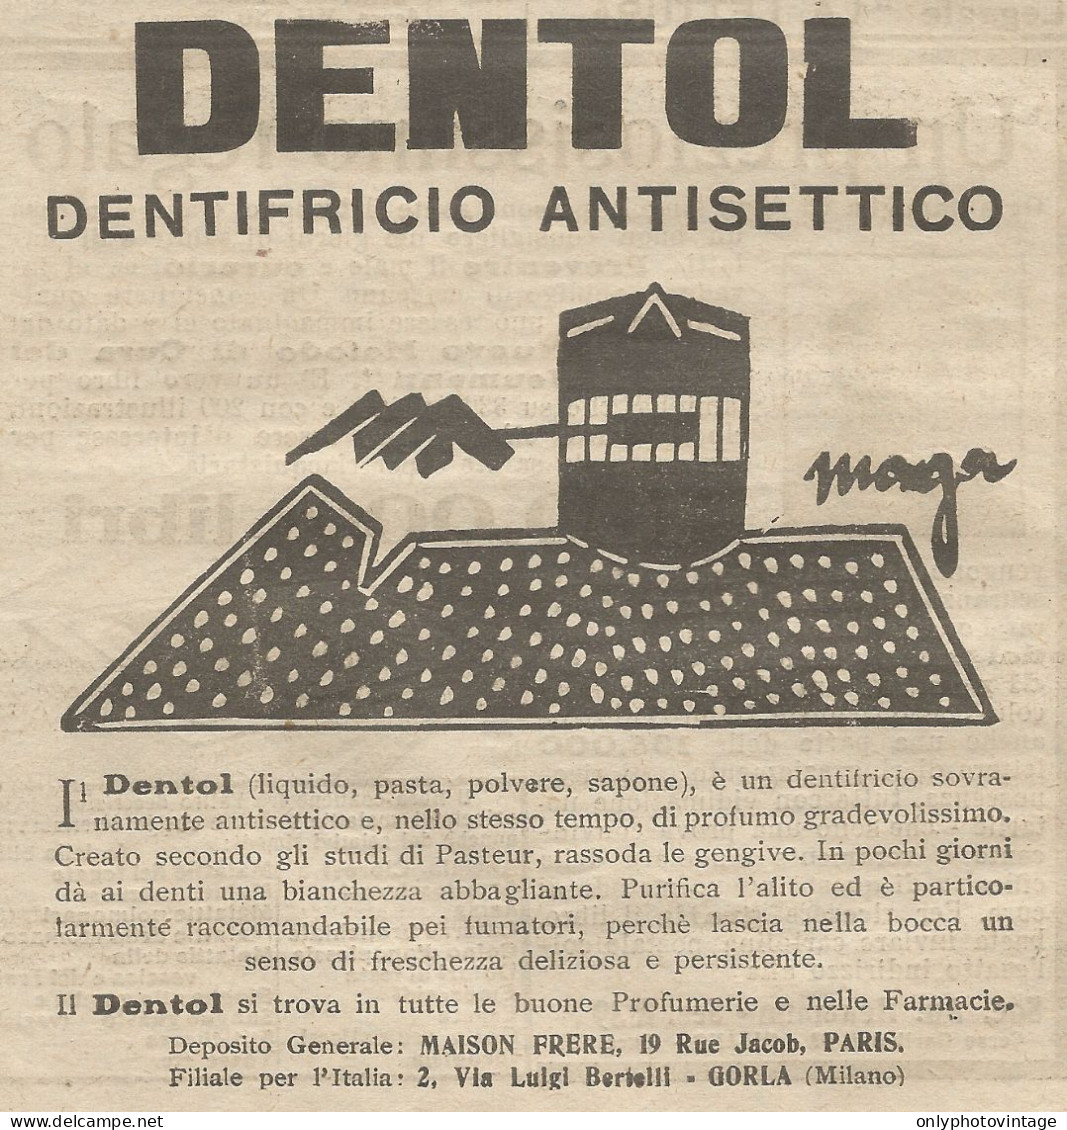 W1060 Dentifricio Antisettico DENTOL - Pubblicità 1926 - Advertising - Advertising